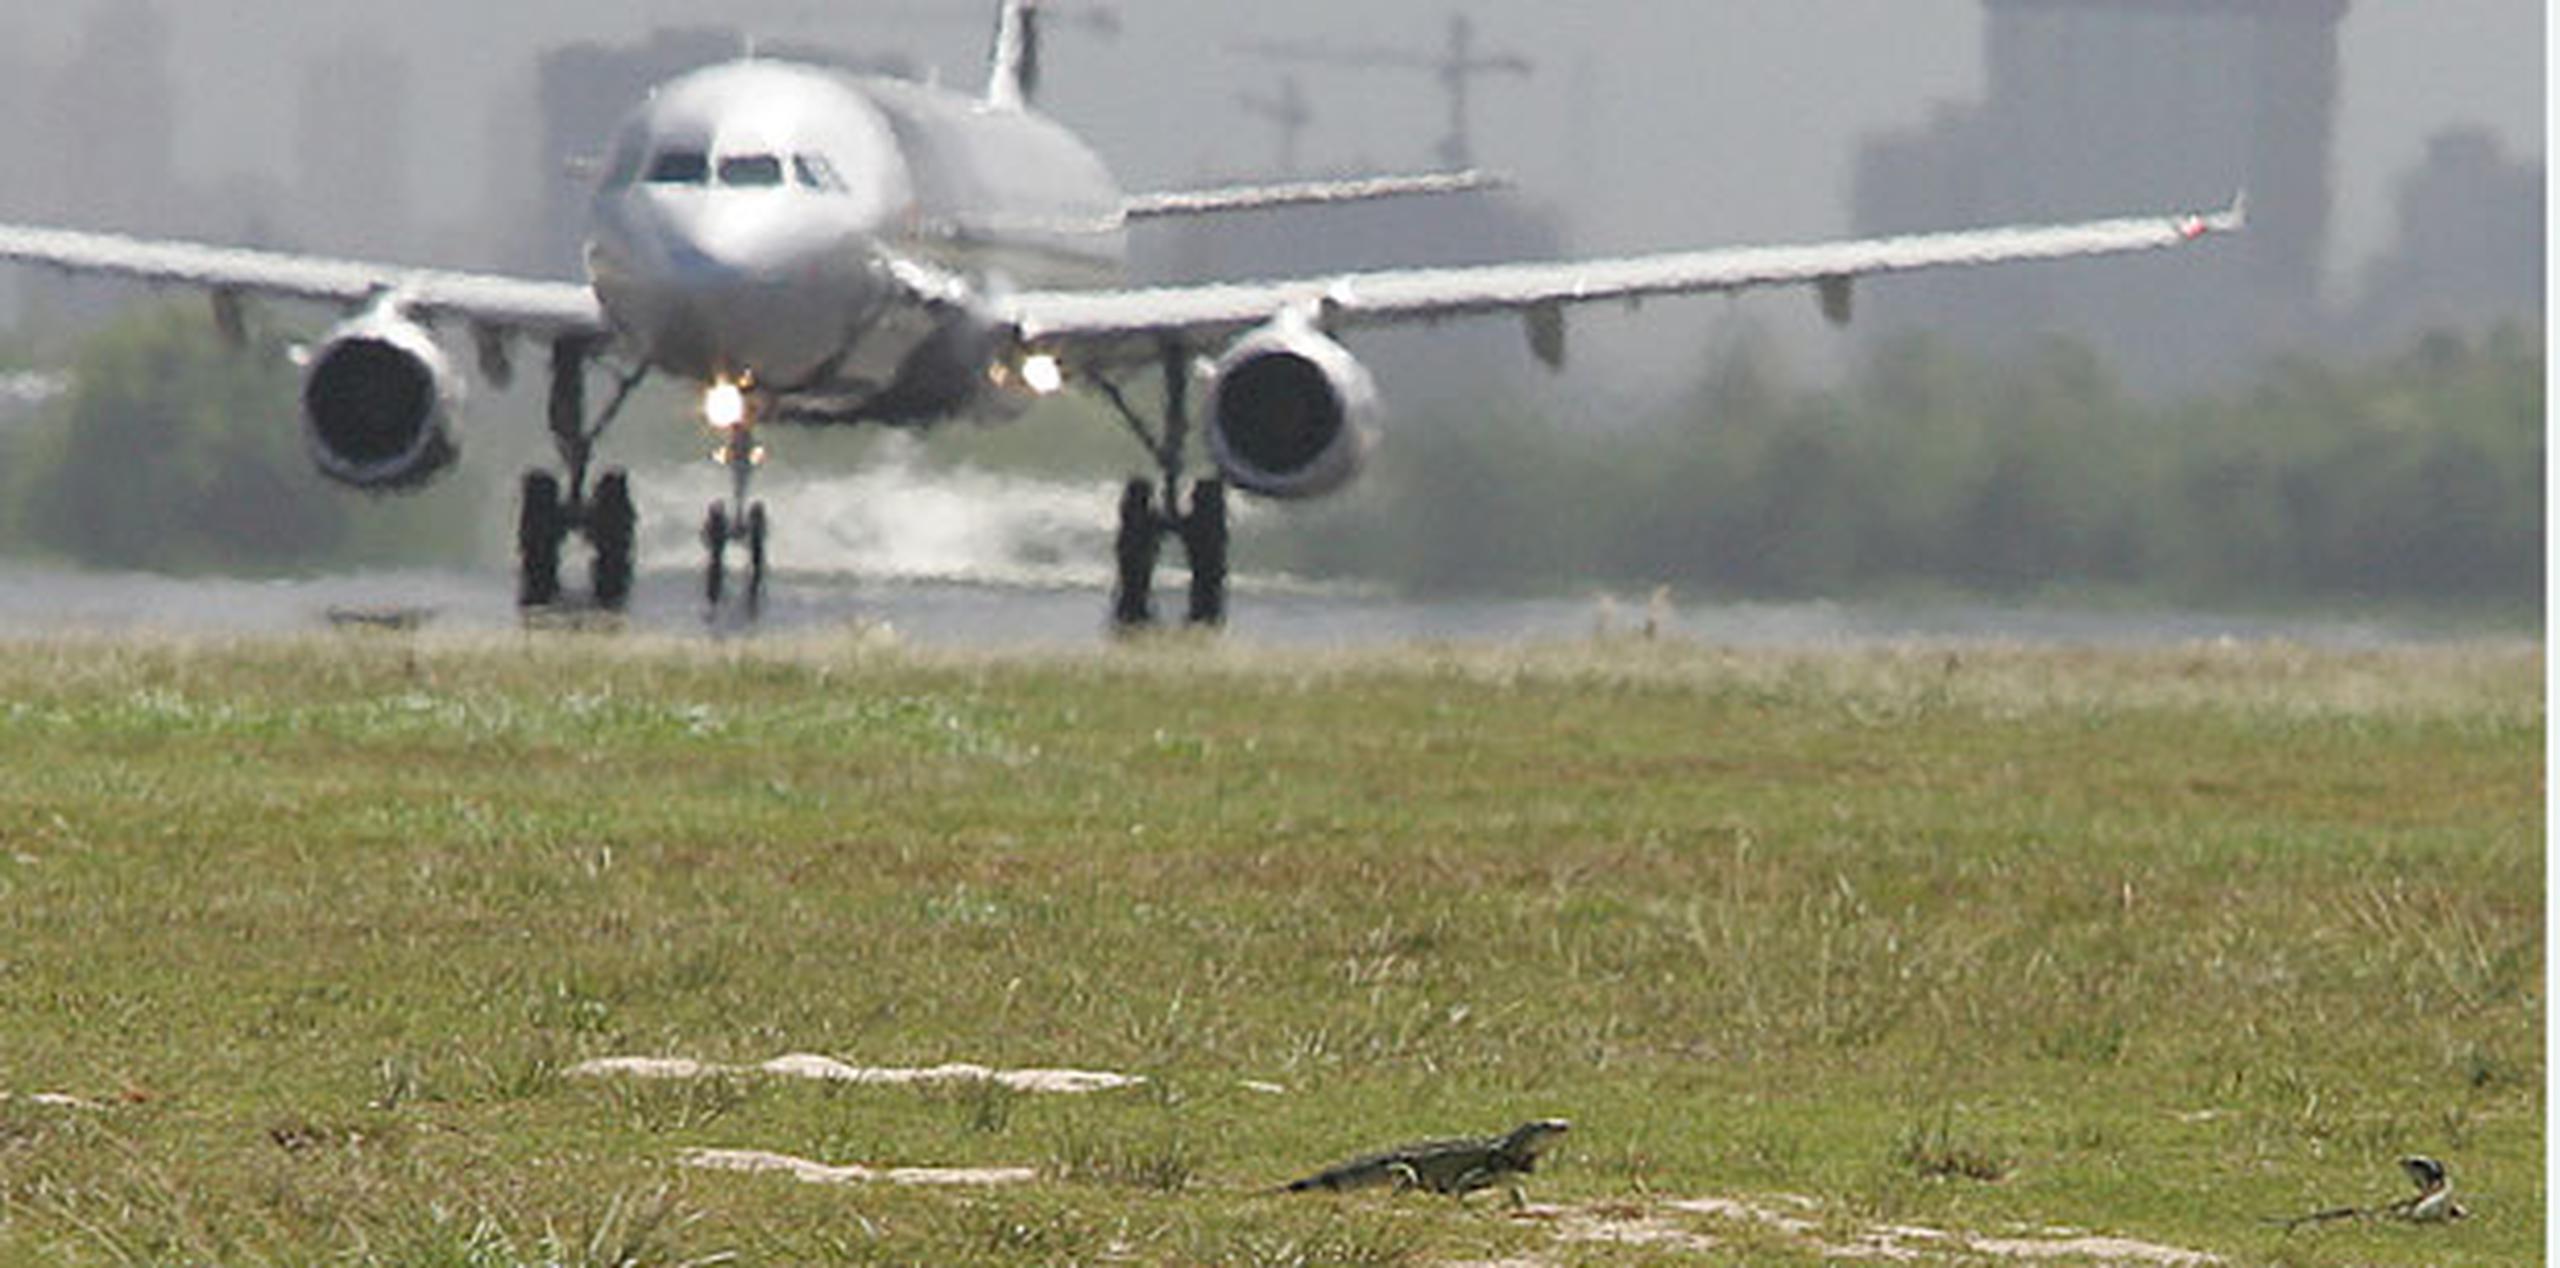 Las iguanas han causado serios problemas en el aeropuerto Luis Muñoz Marín.(Archivo)